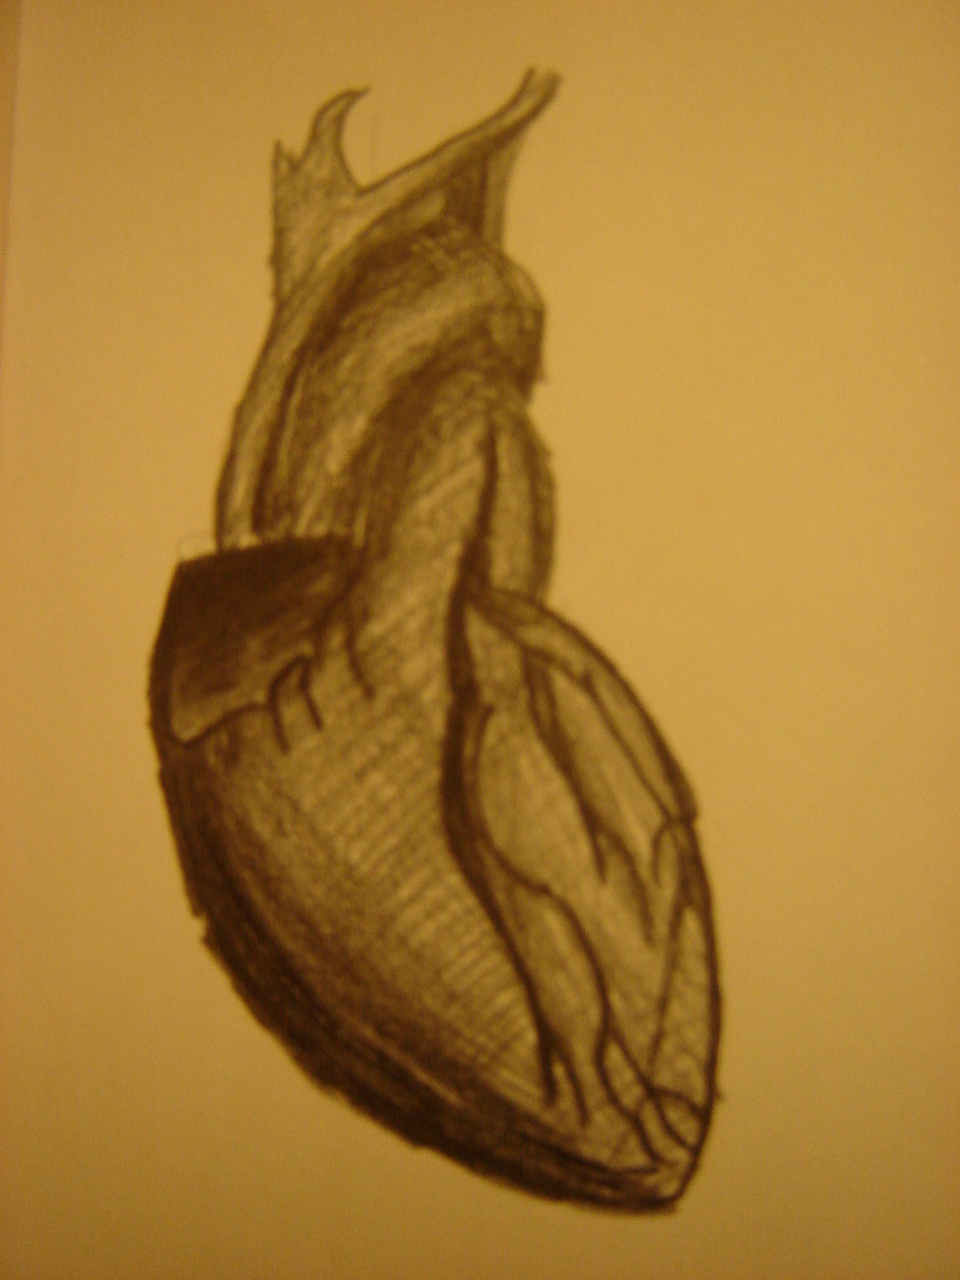 Heart Drawings 2 by Rykten